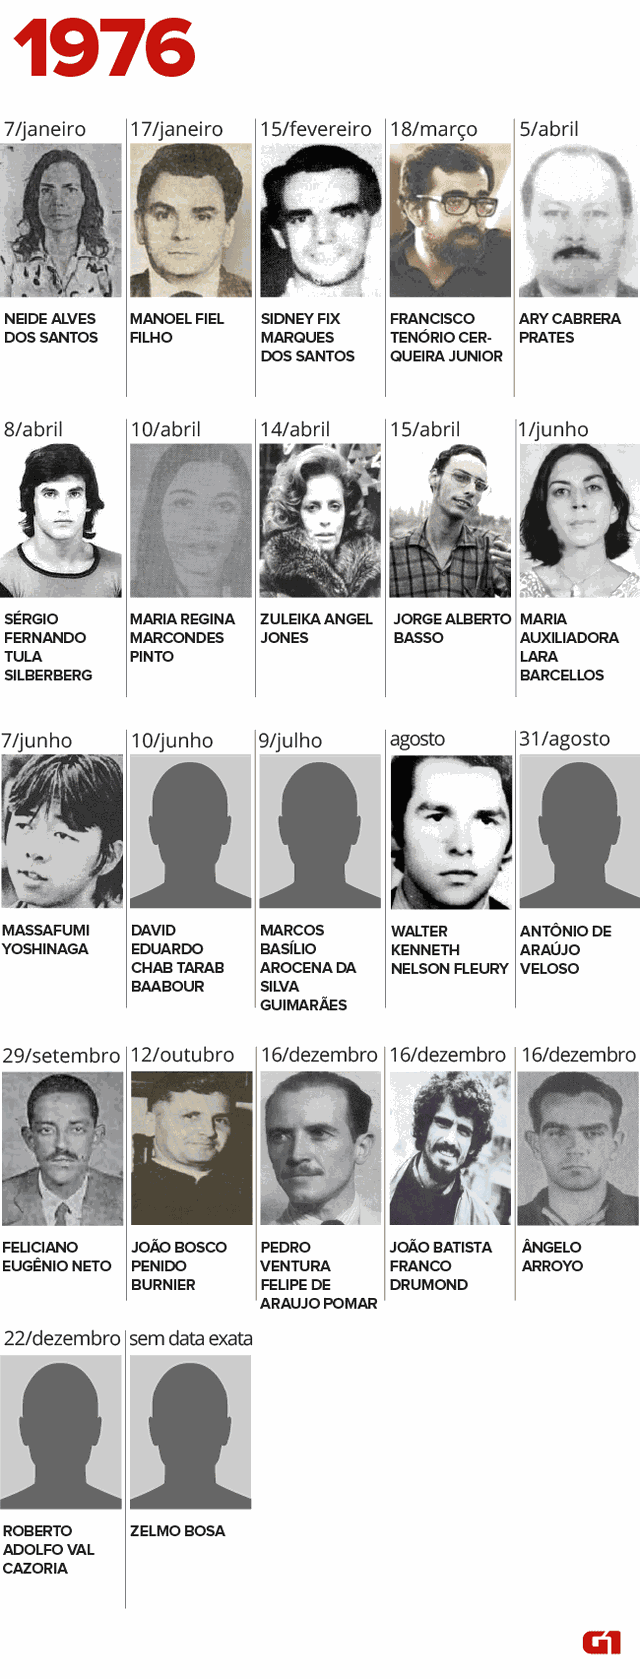 Desparecidos e mortos pela ditadura em 1976 (Foto: Igor Estrella/G1)